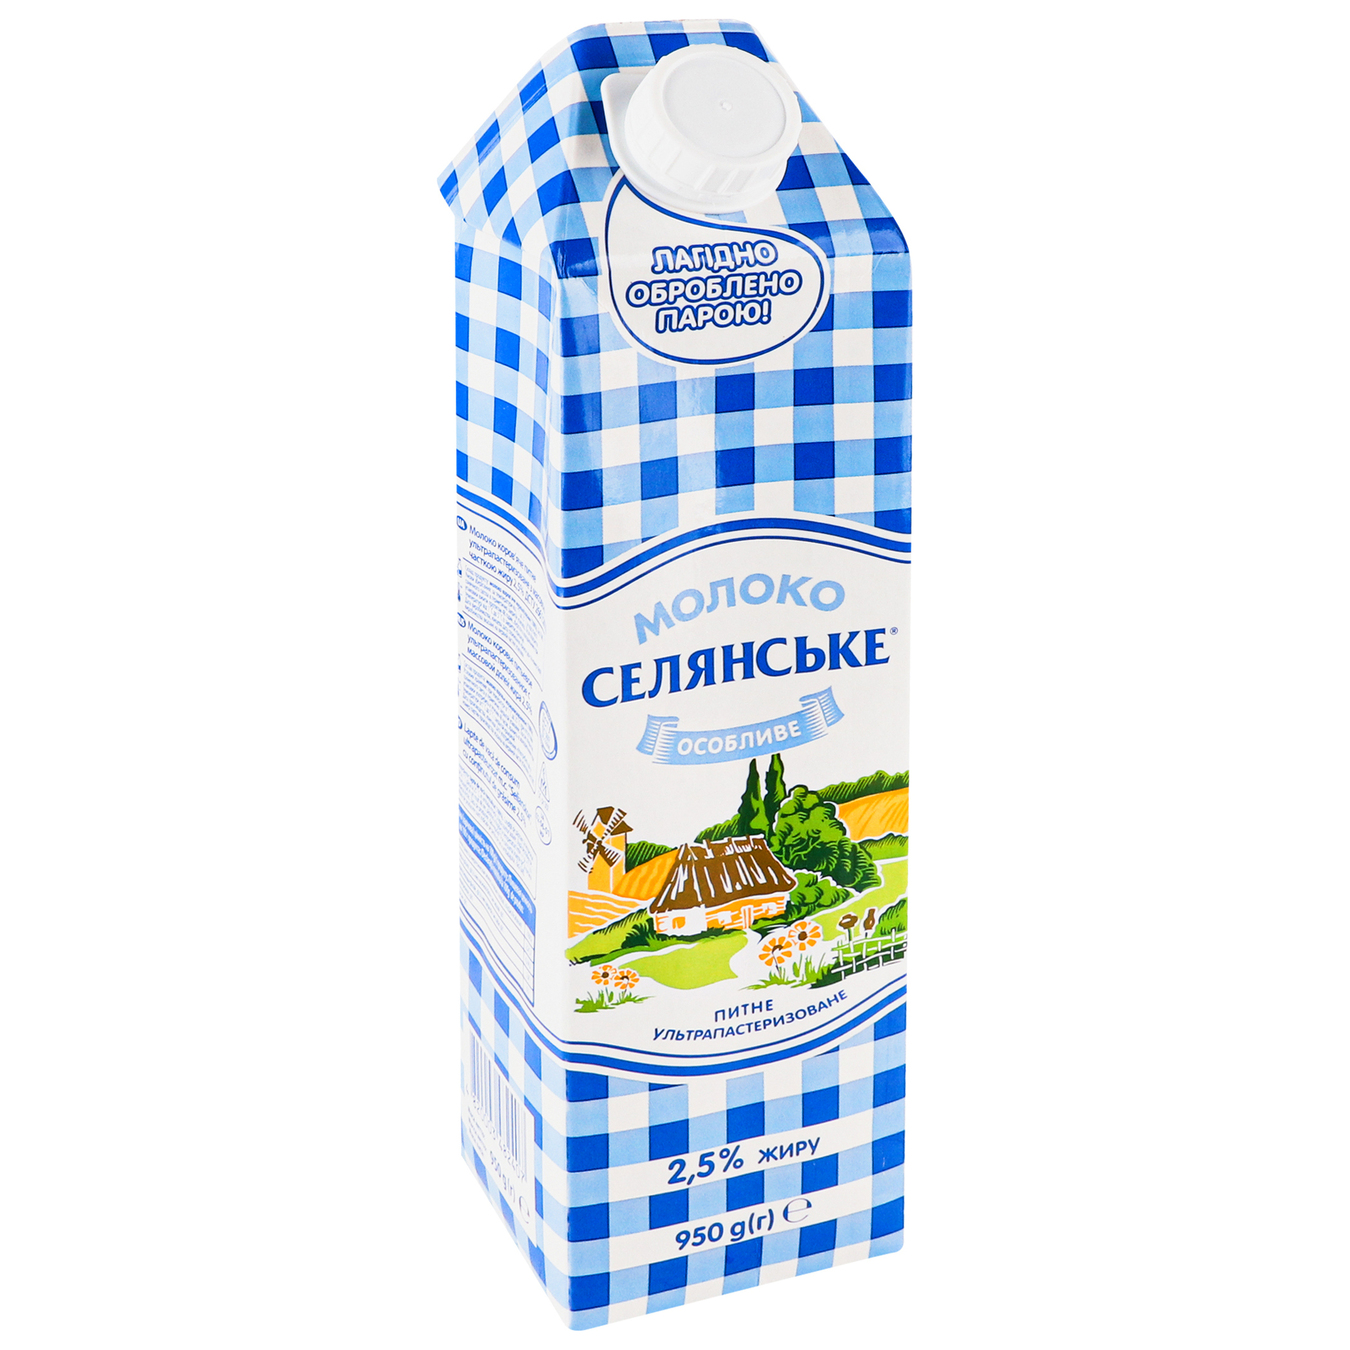 Selianske Special Ultrapasteurized Milk 2,5% 950g 2